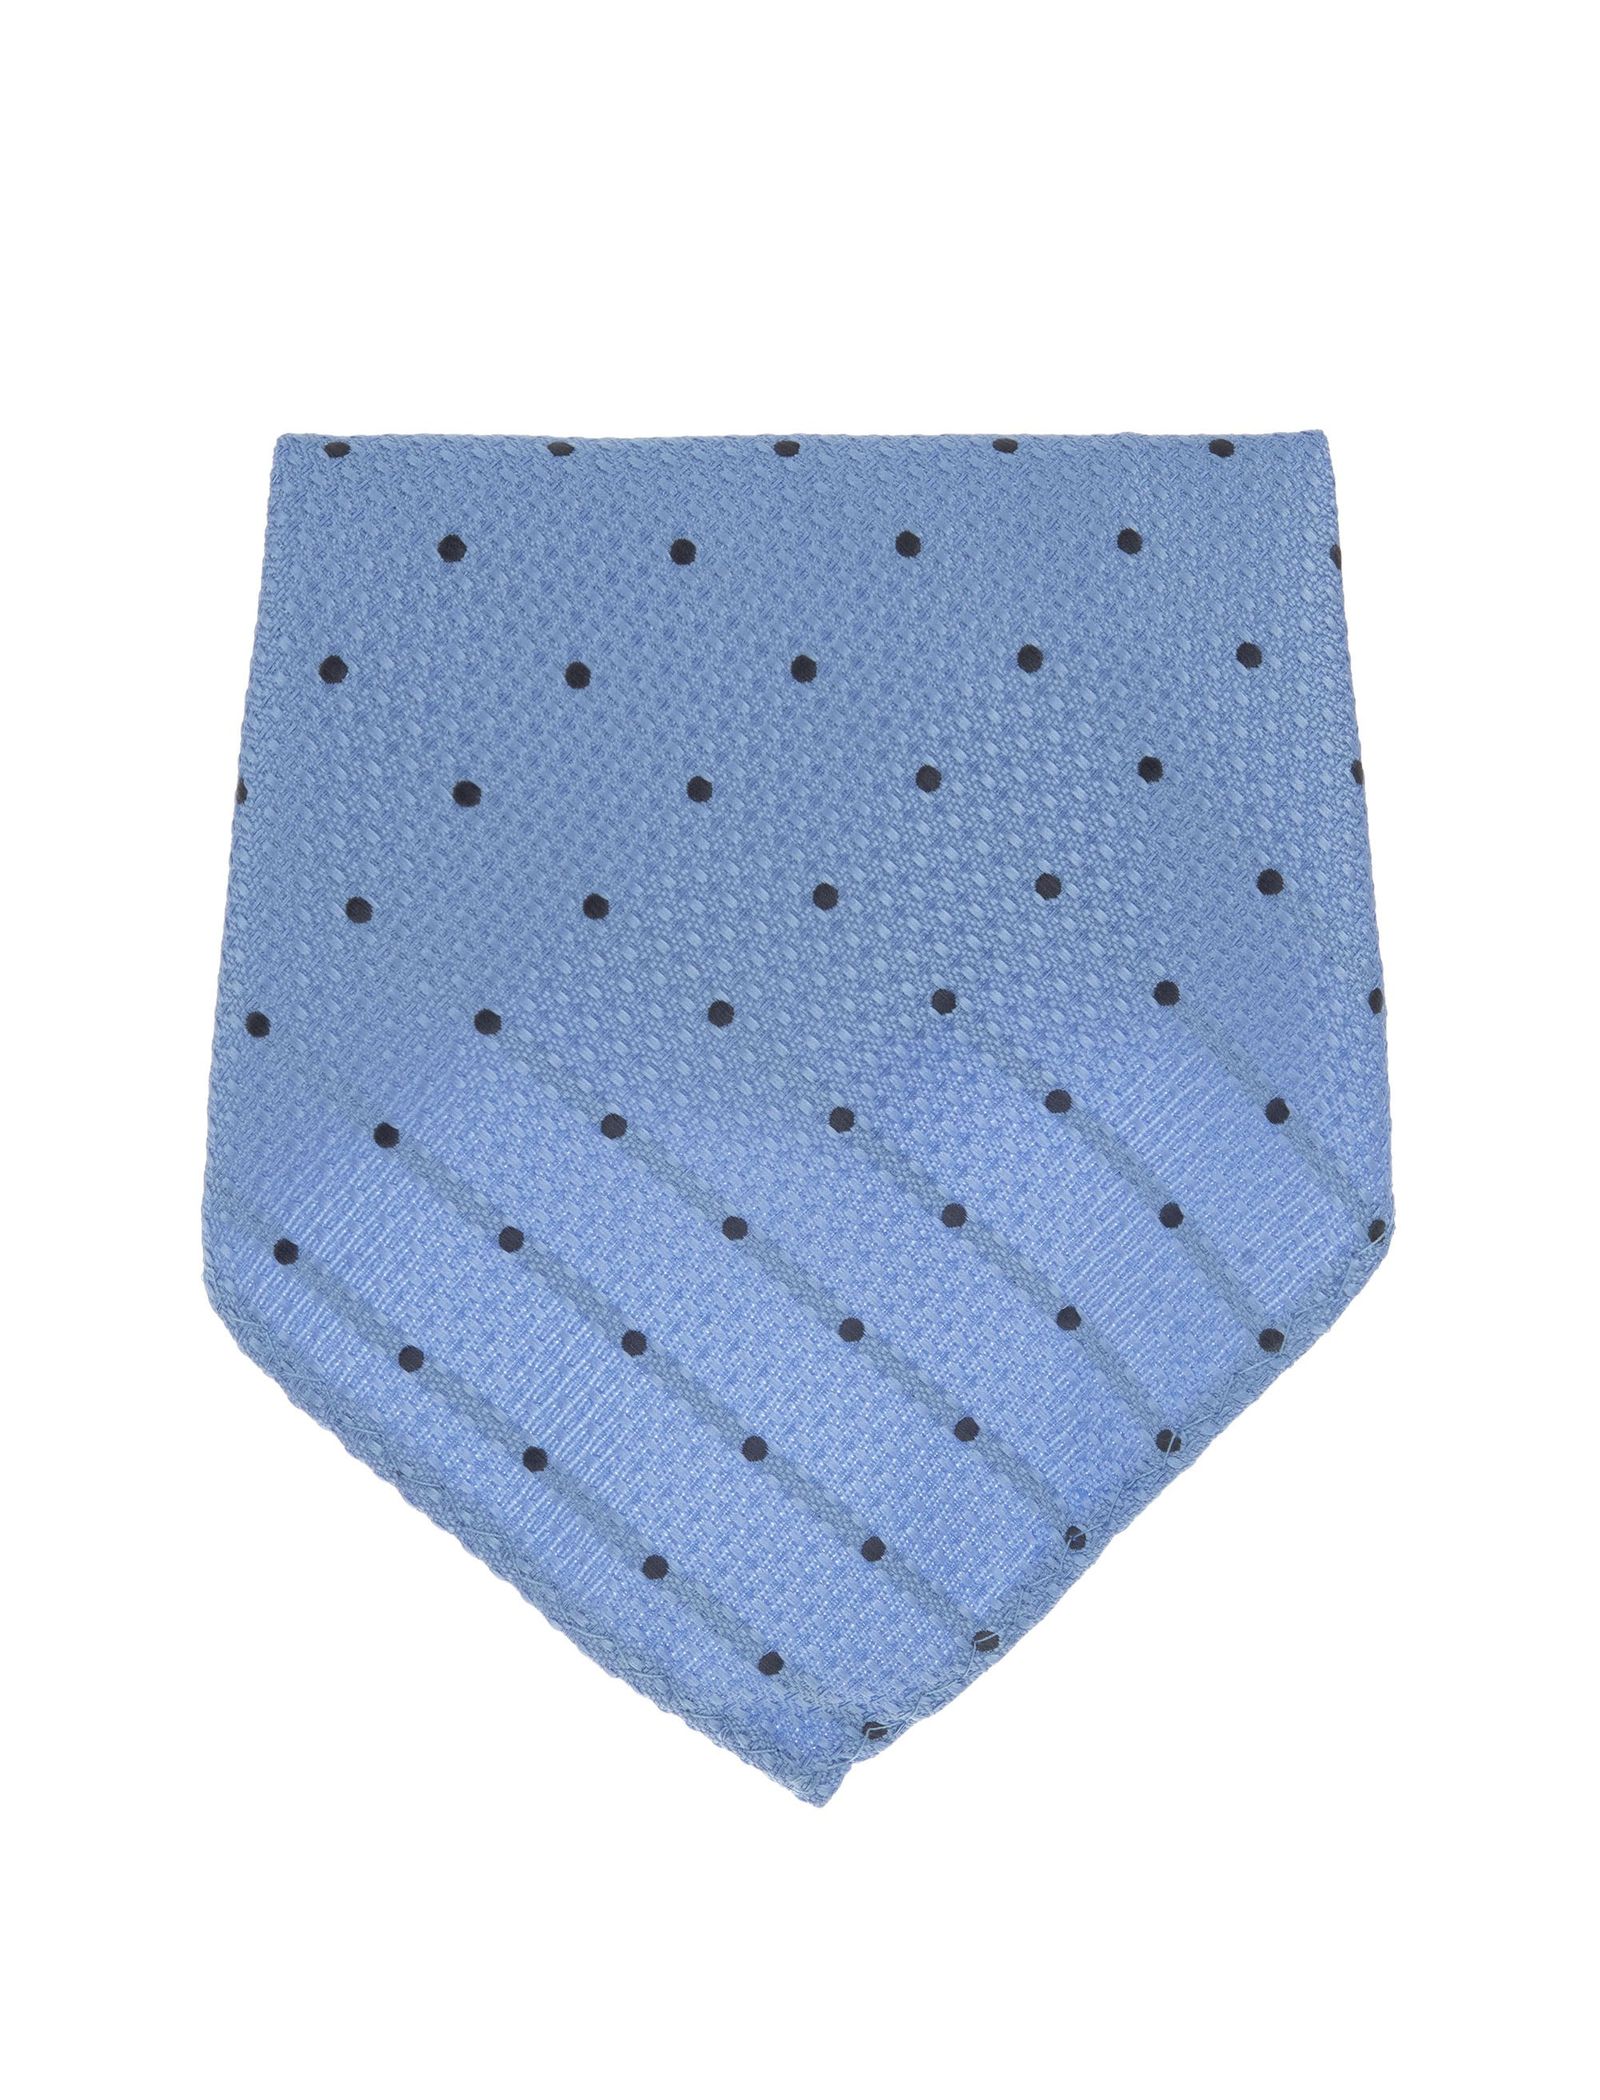 کراوات ساده مردانه - سلکتد تک سایز -  - 5